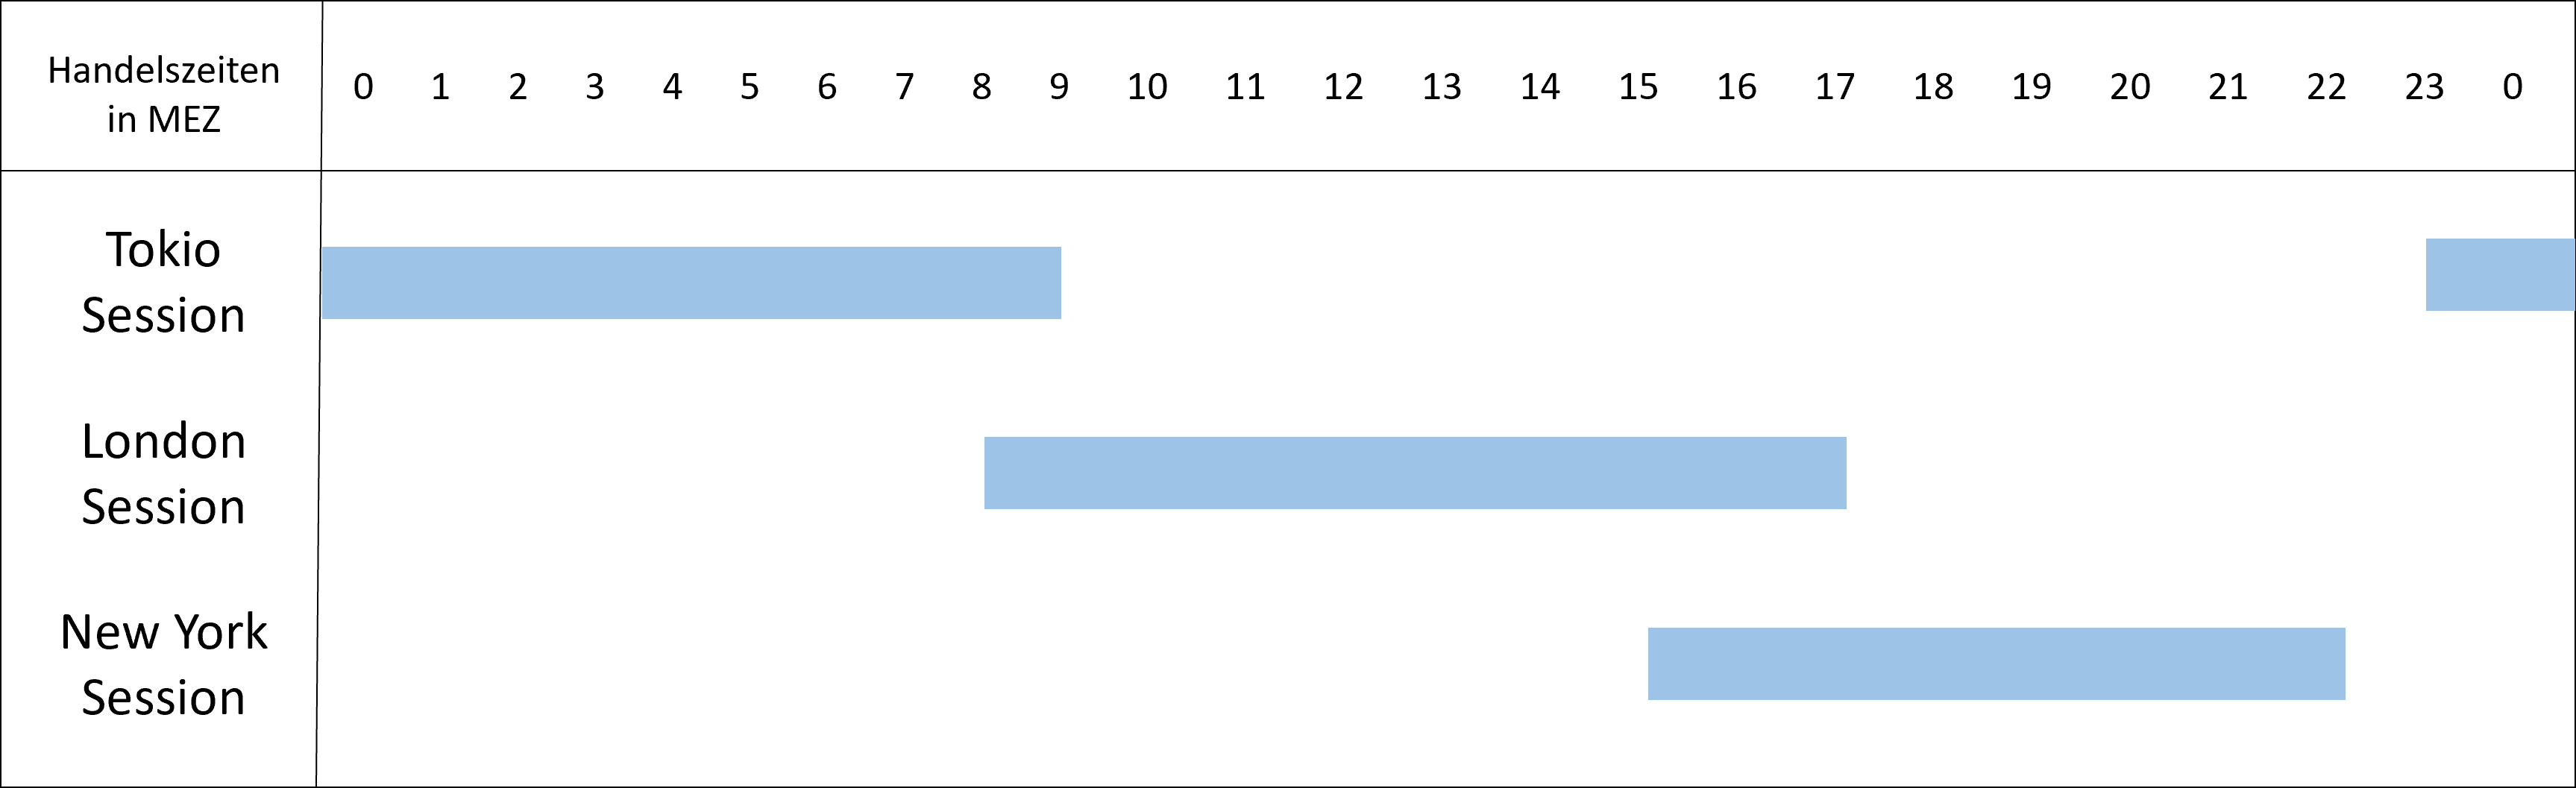 Grafik, die die Handelszeiten verschiedener Sessions darstellt